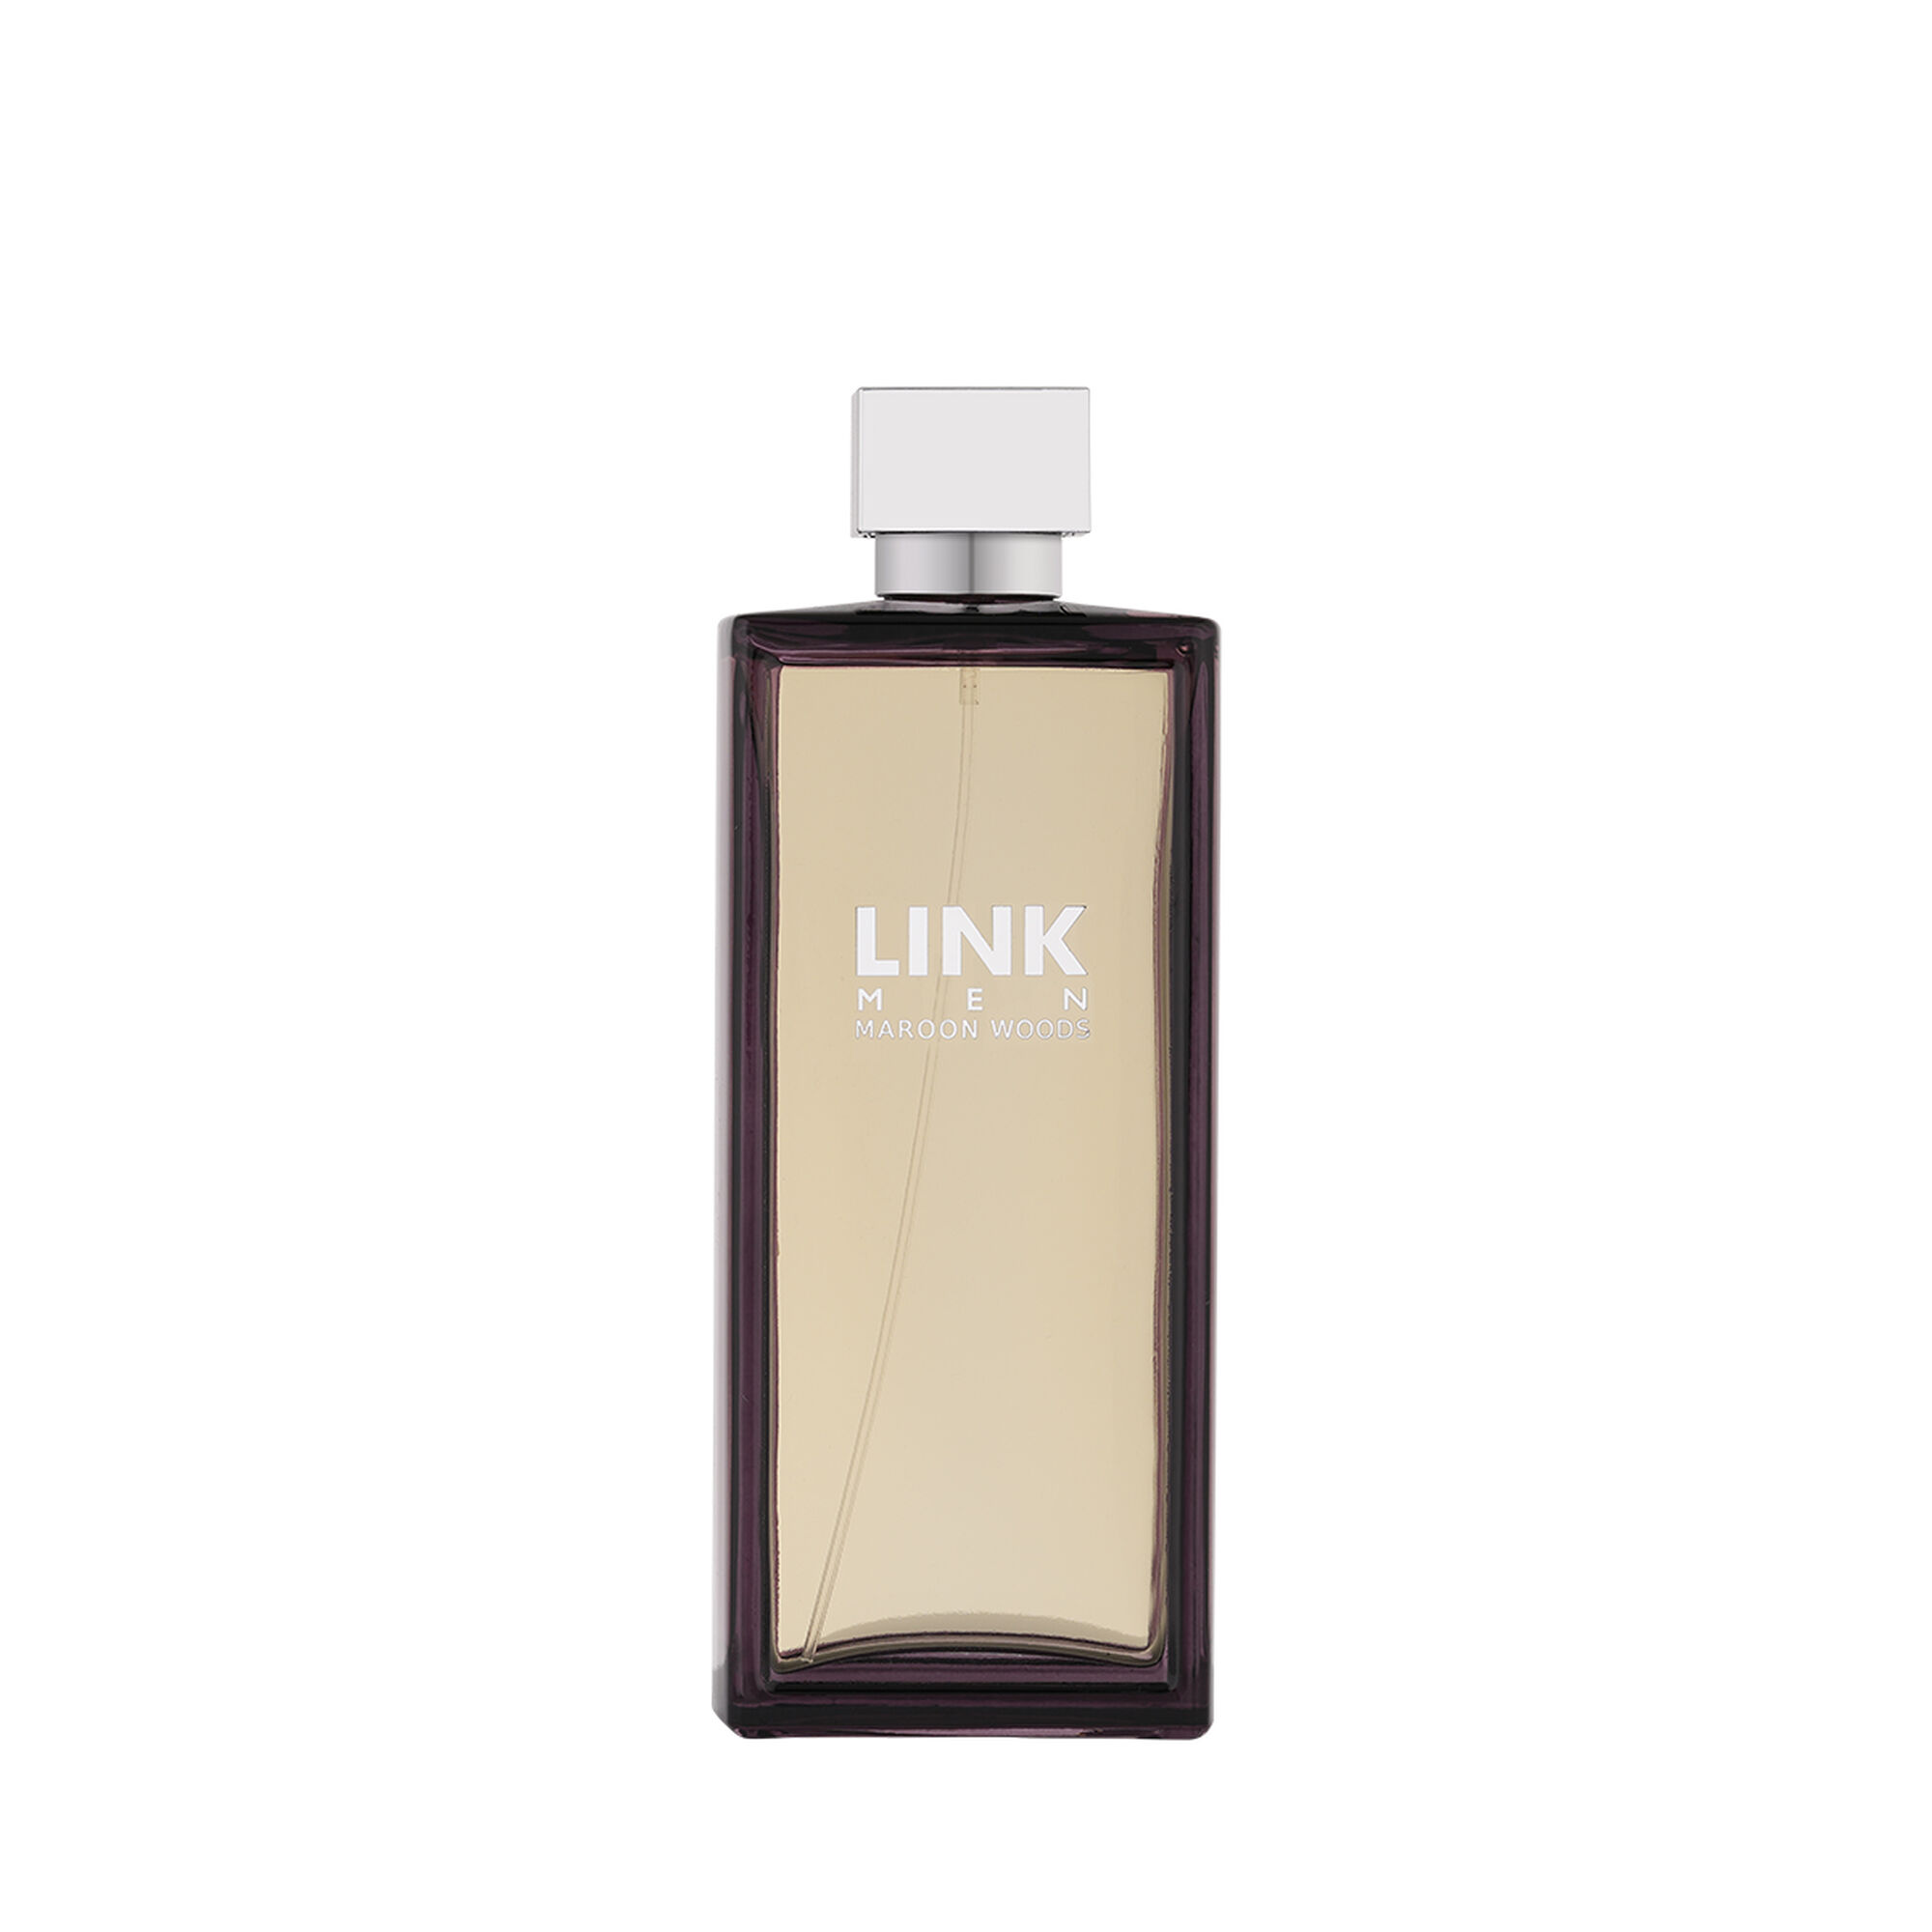 Maroon Perfume by Link 200ml